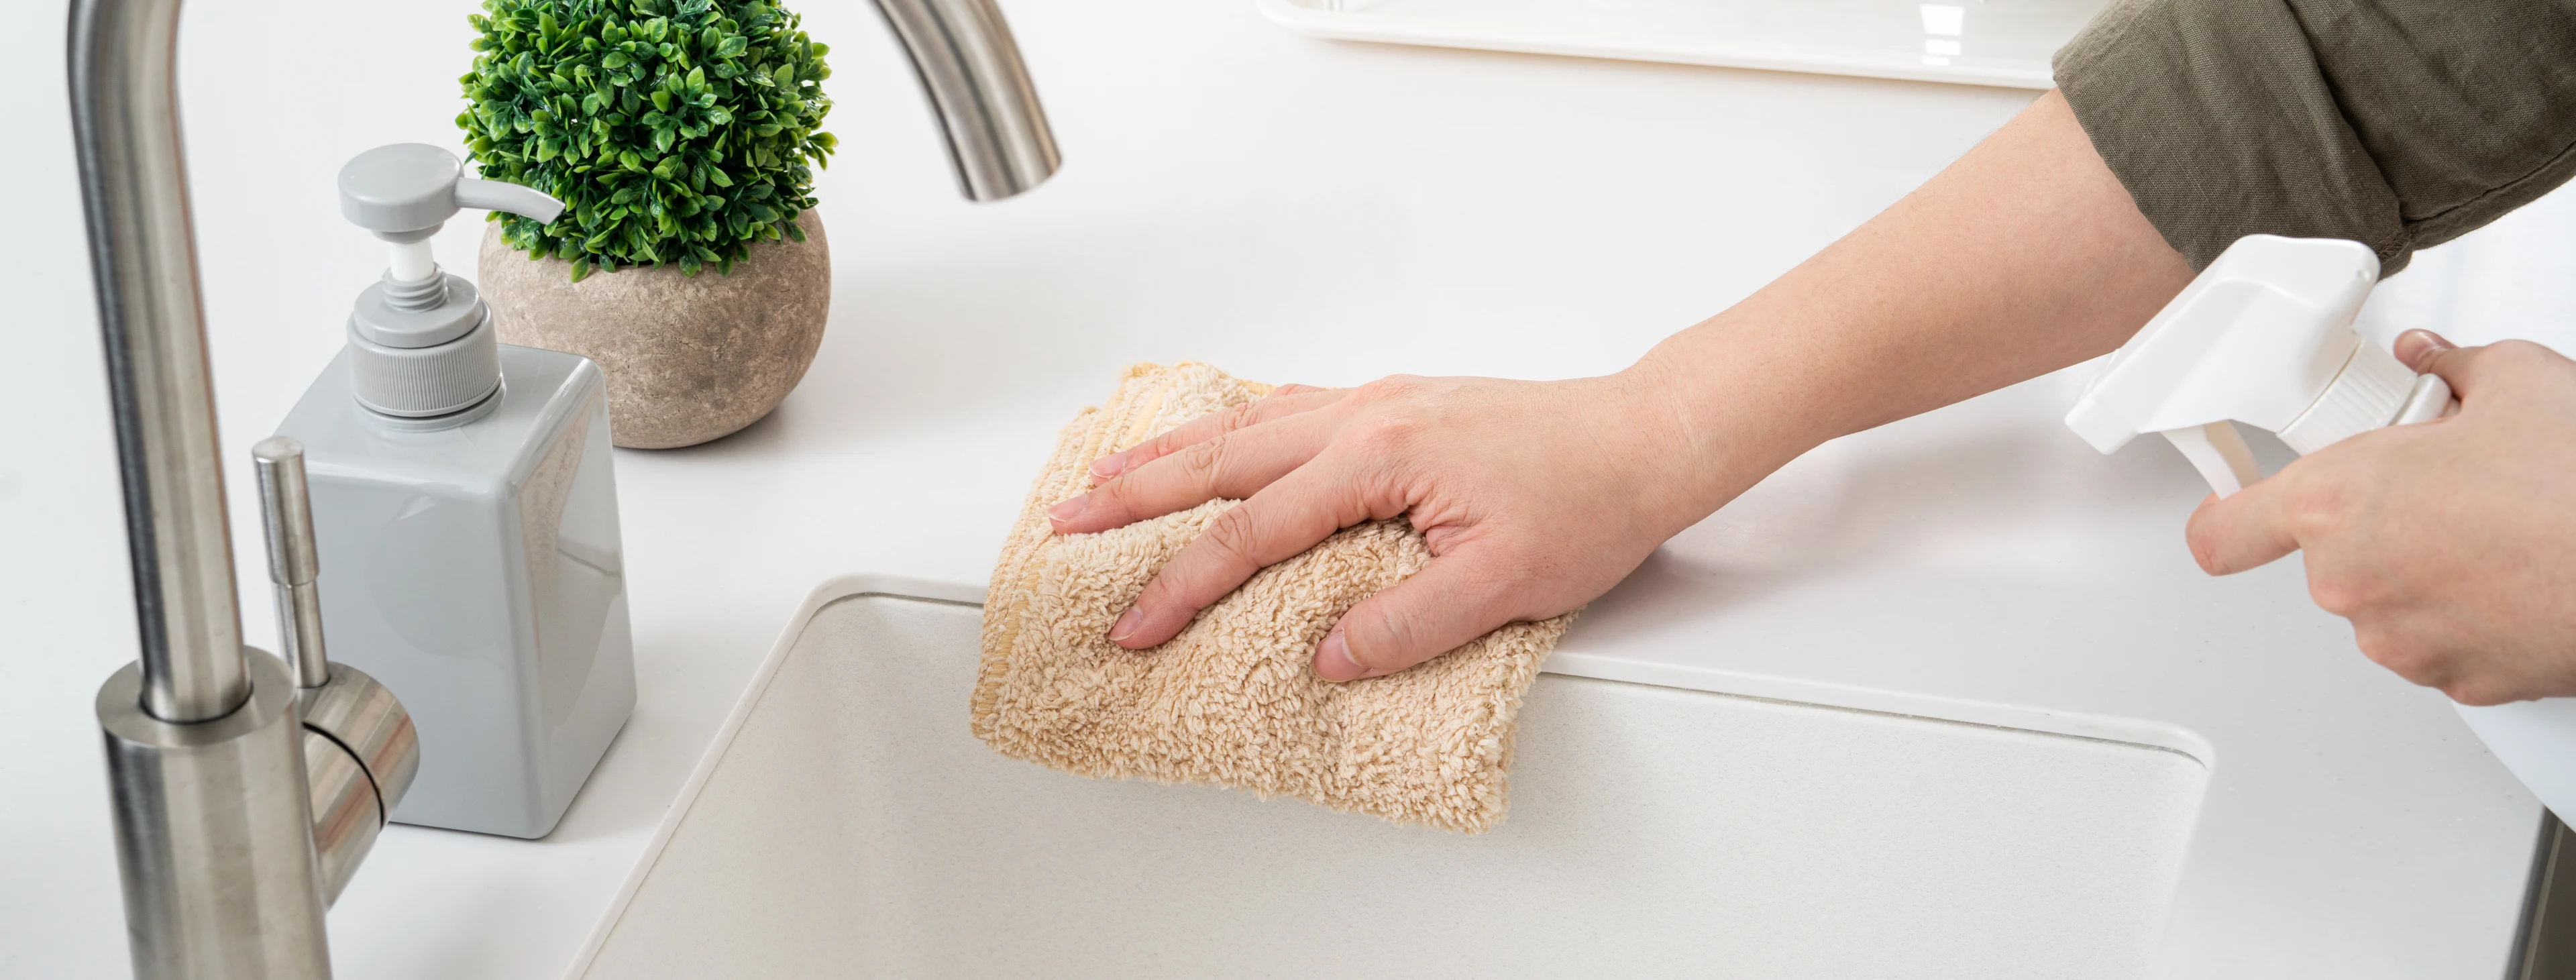 une personne portant un gant nettoie un évier en se servant d’un produit spécifique. 